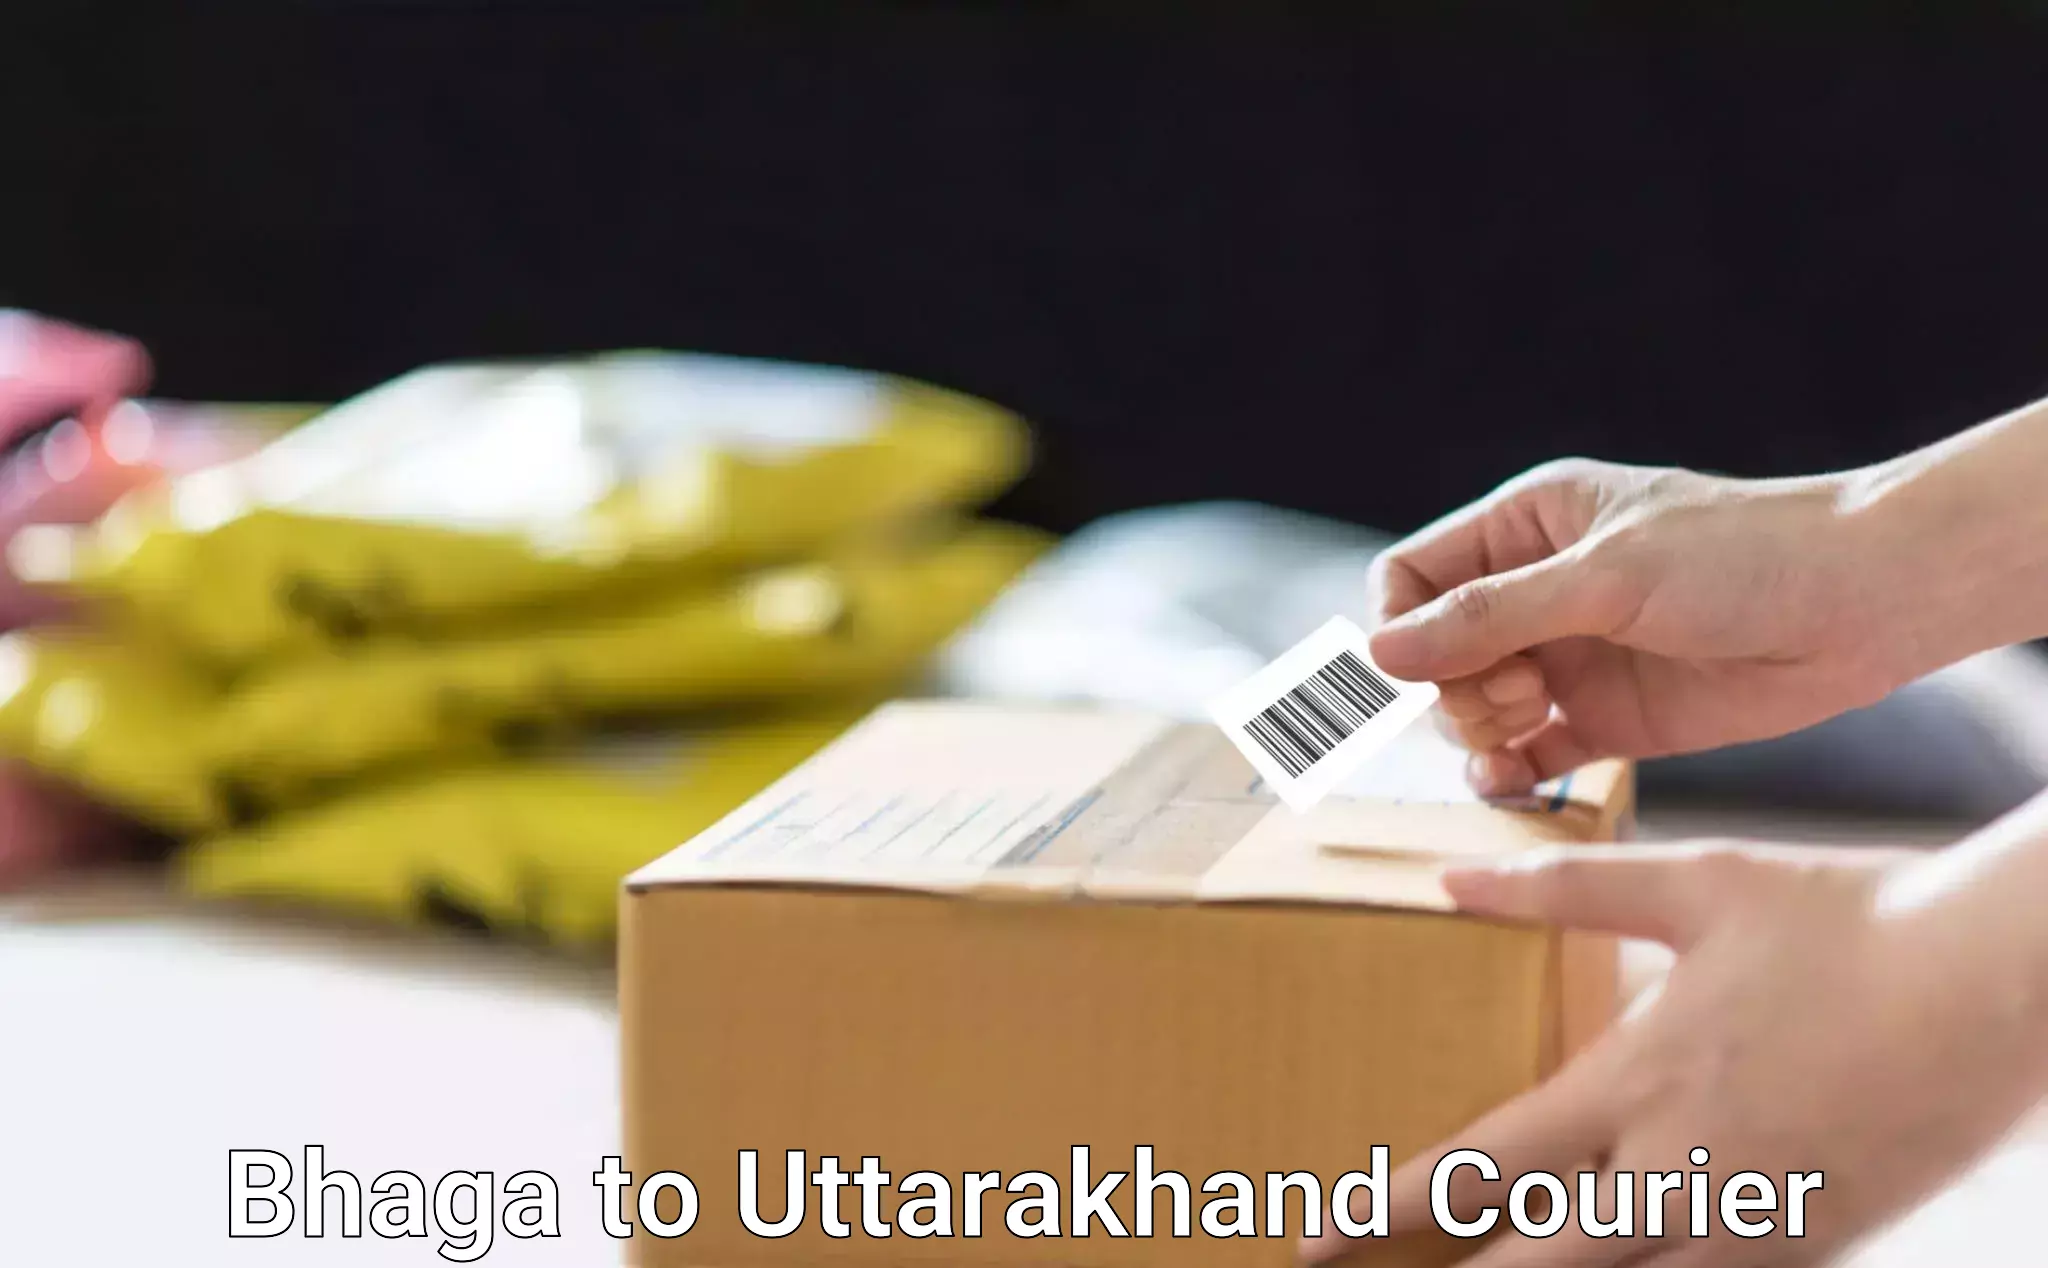 Customized shipping options Bhaga to Uttarakhand